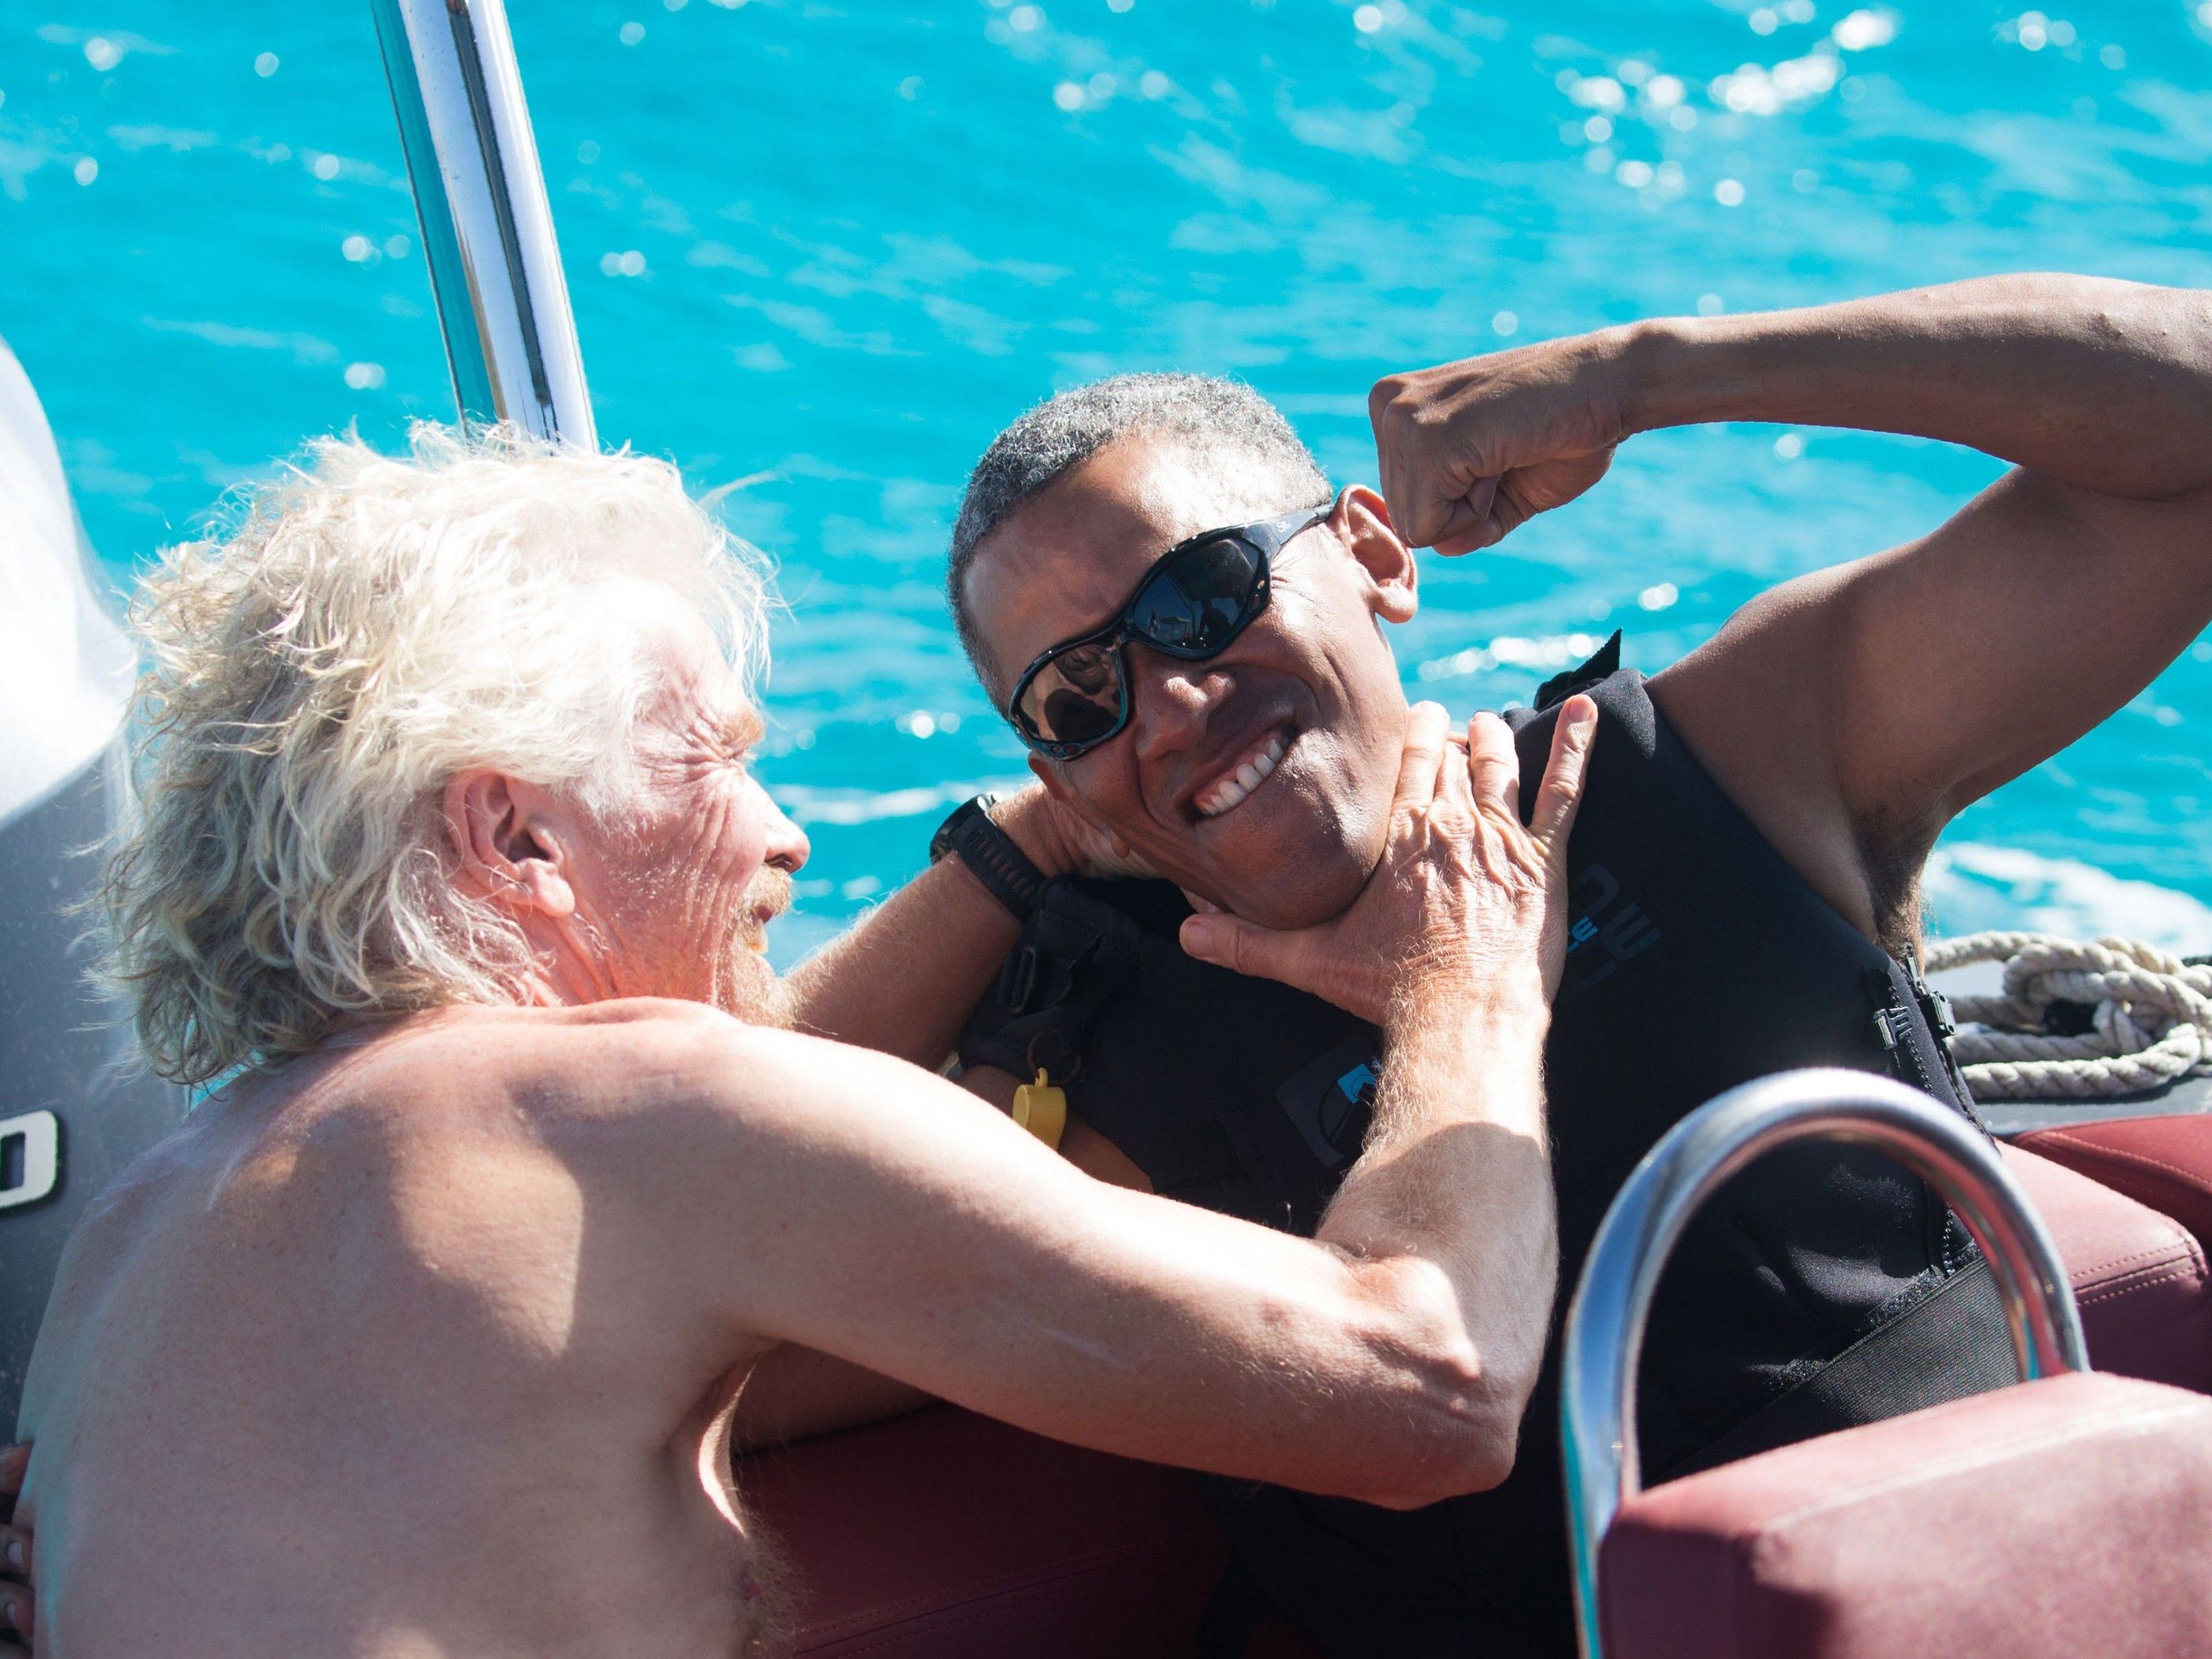 Während seiner Amtszeit konnte Obama aus Sicherheitsgründen nicht surfen - Jetzt könnte nur Richard Branson gefährlich werden.